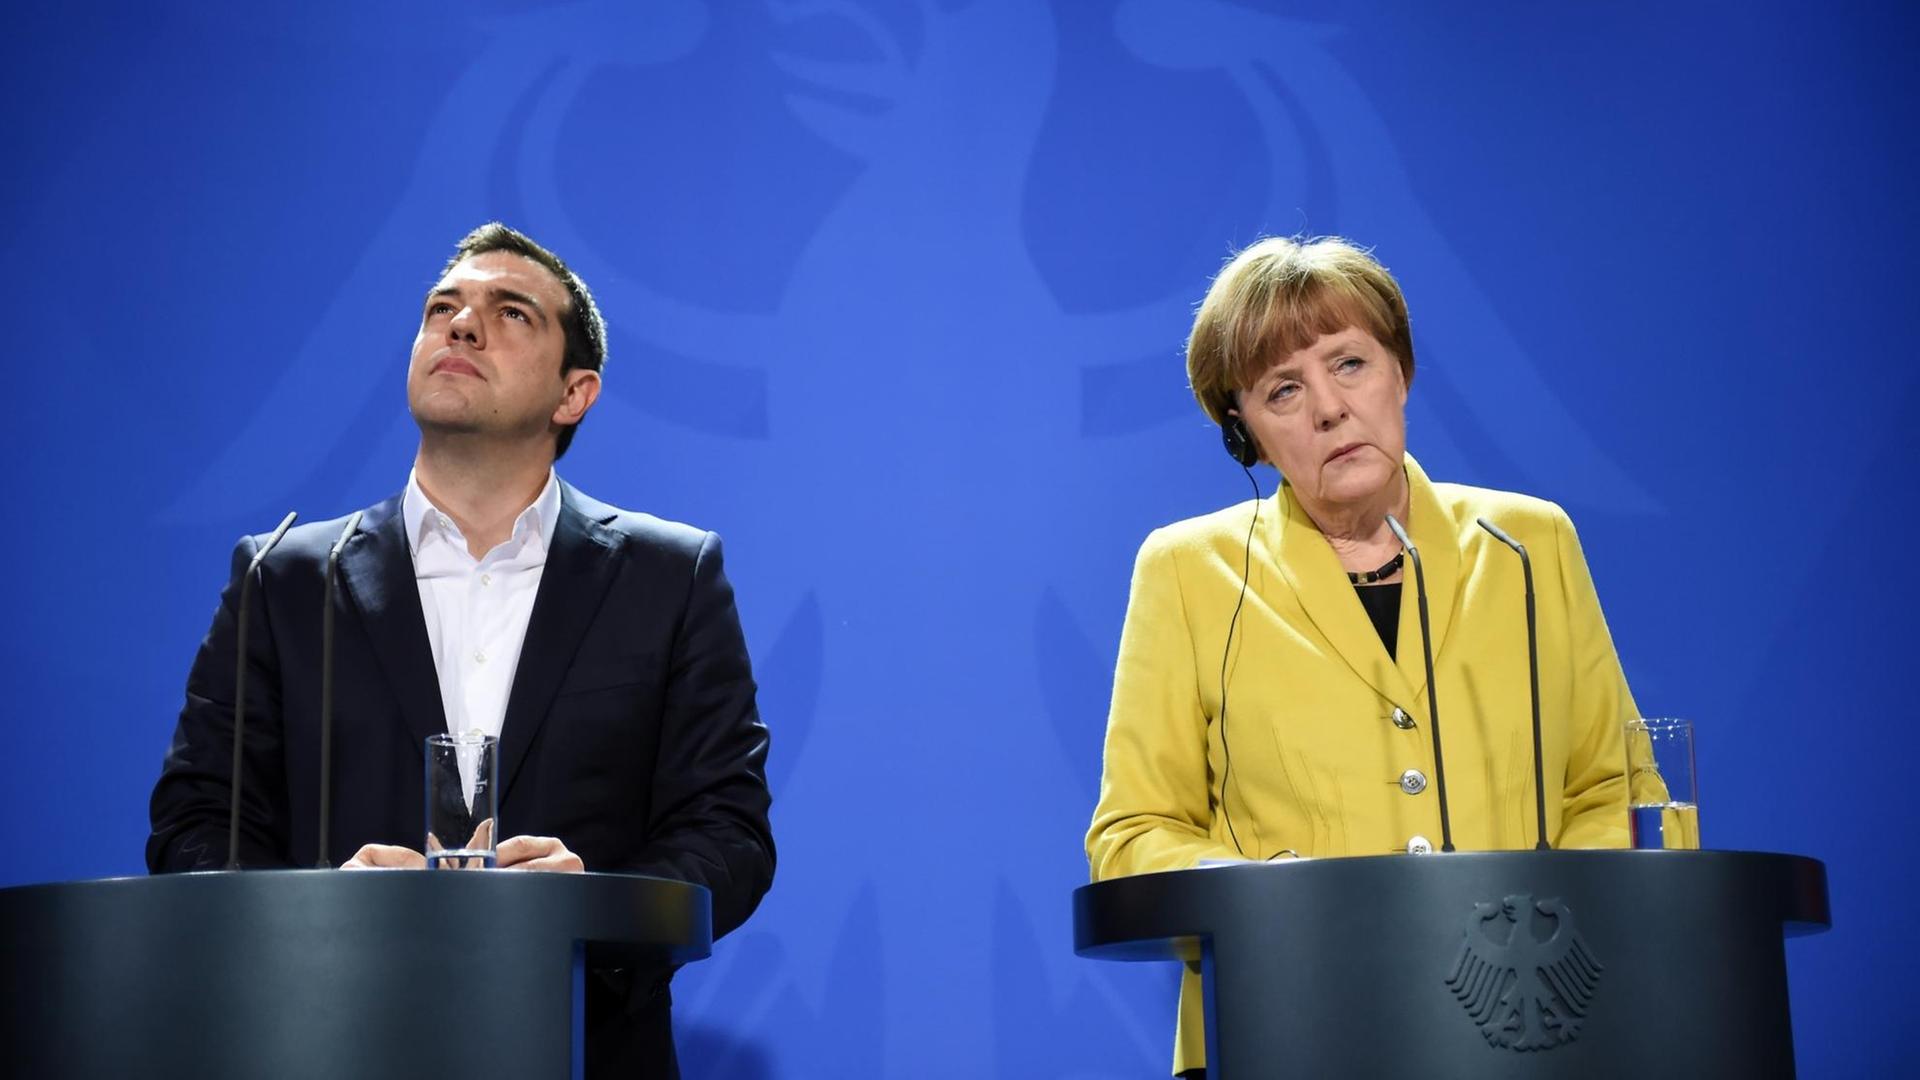 Bundeskanzlerin Angela Merkel (CDU) und der griechische Ministerpräsident Alexis Tsipras informieren am 23.03.2015 bei einer Pressekonferenz im Bundeskanzleramt in Berlin über ihr vorangegangenes Gespräch. Tsipras befindet sich zu seinem Antrittsbesuch in der deutschen Hauptstadt.